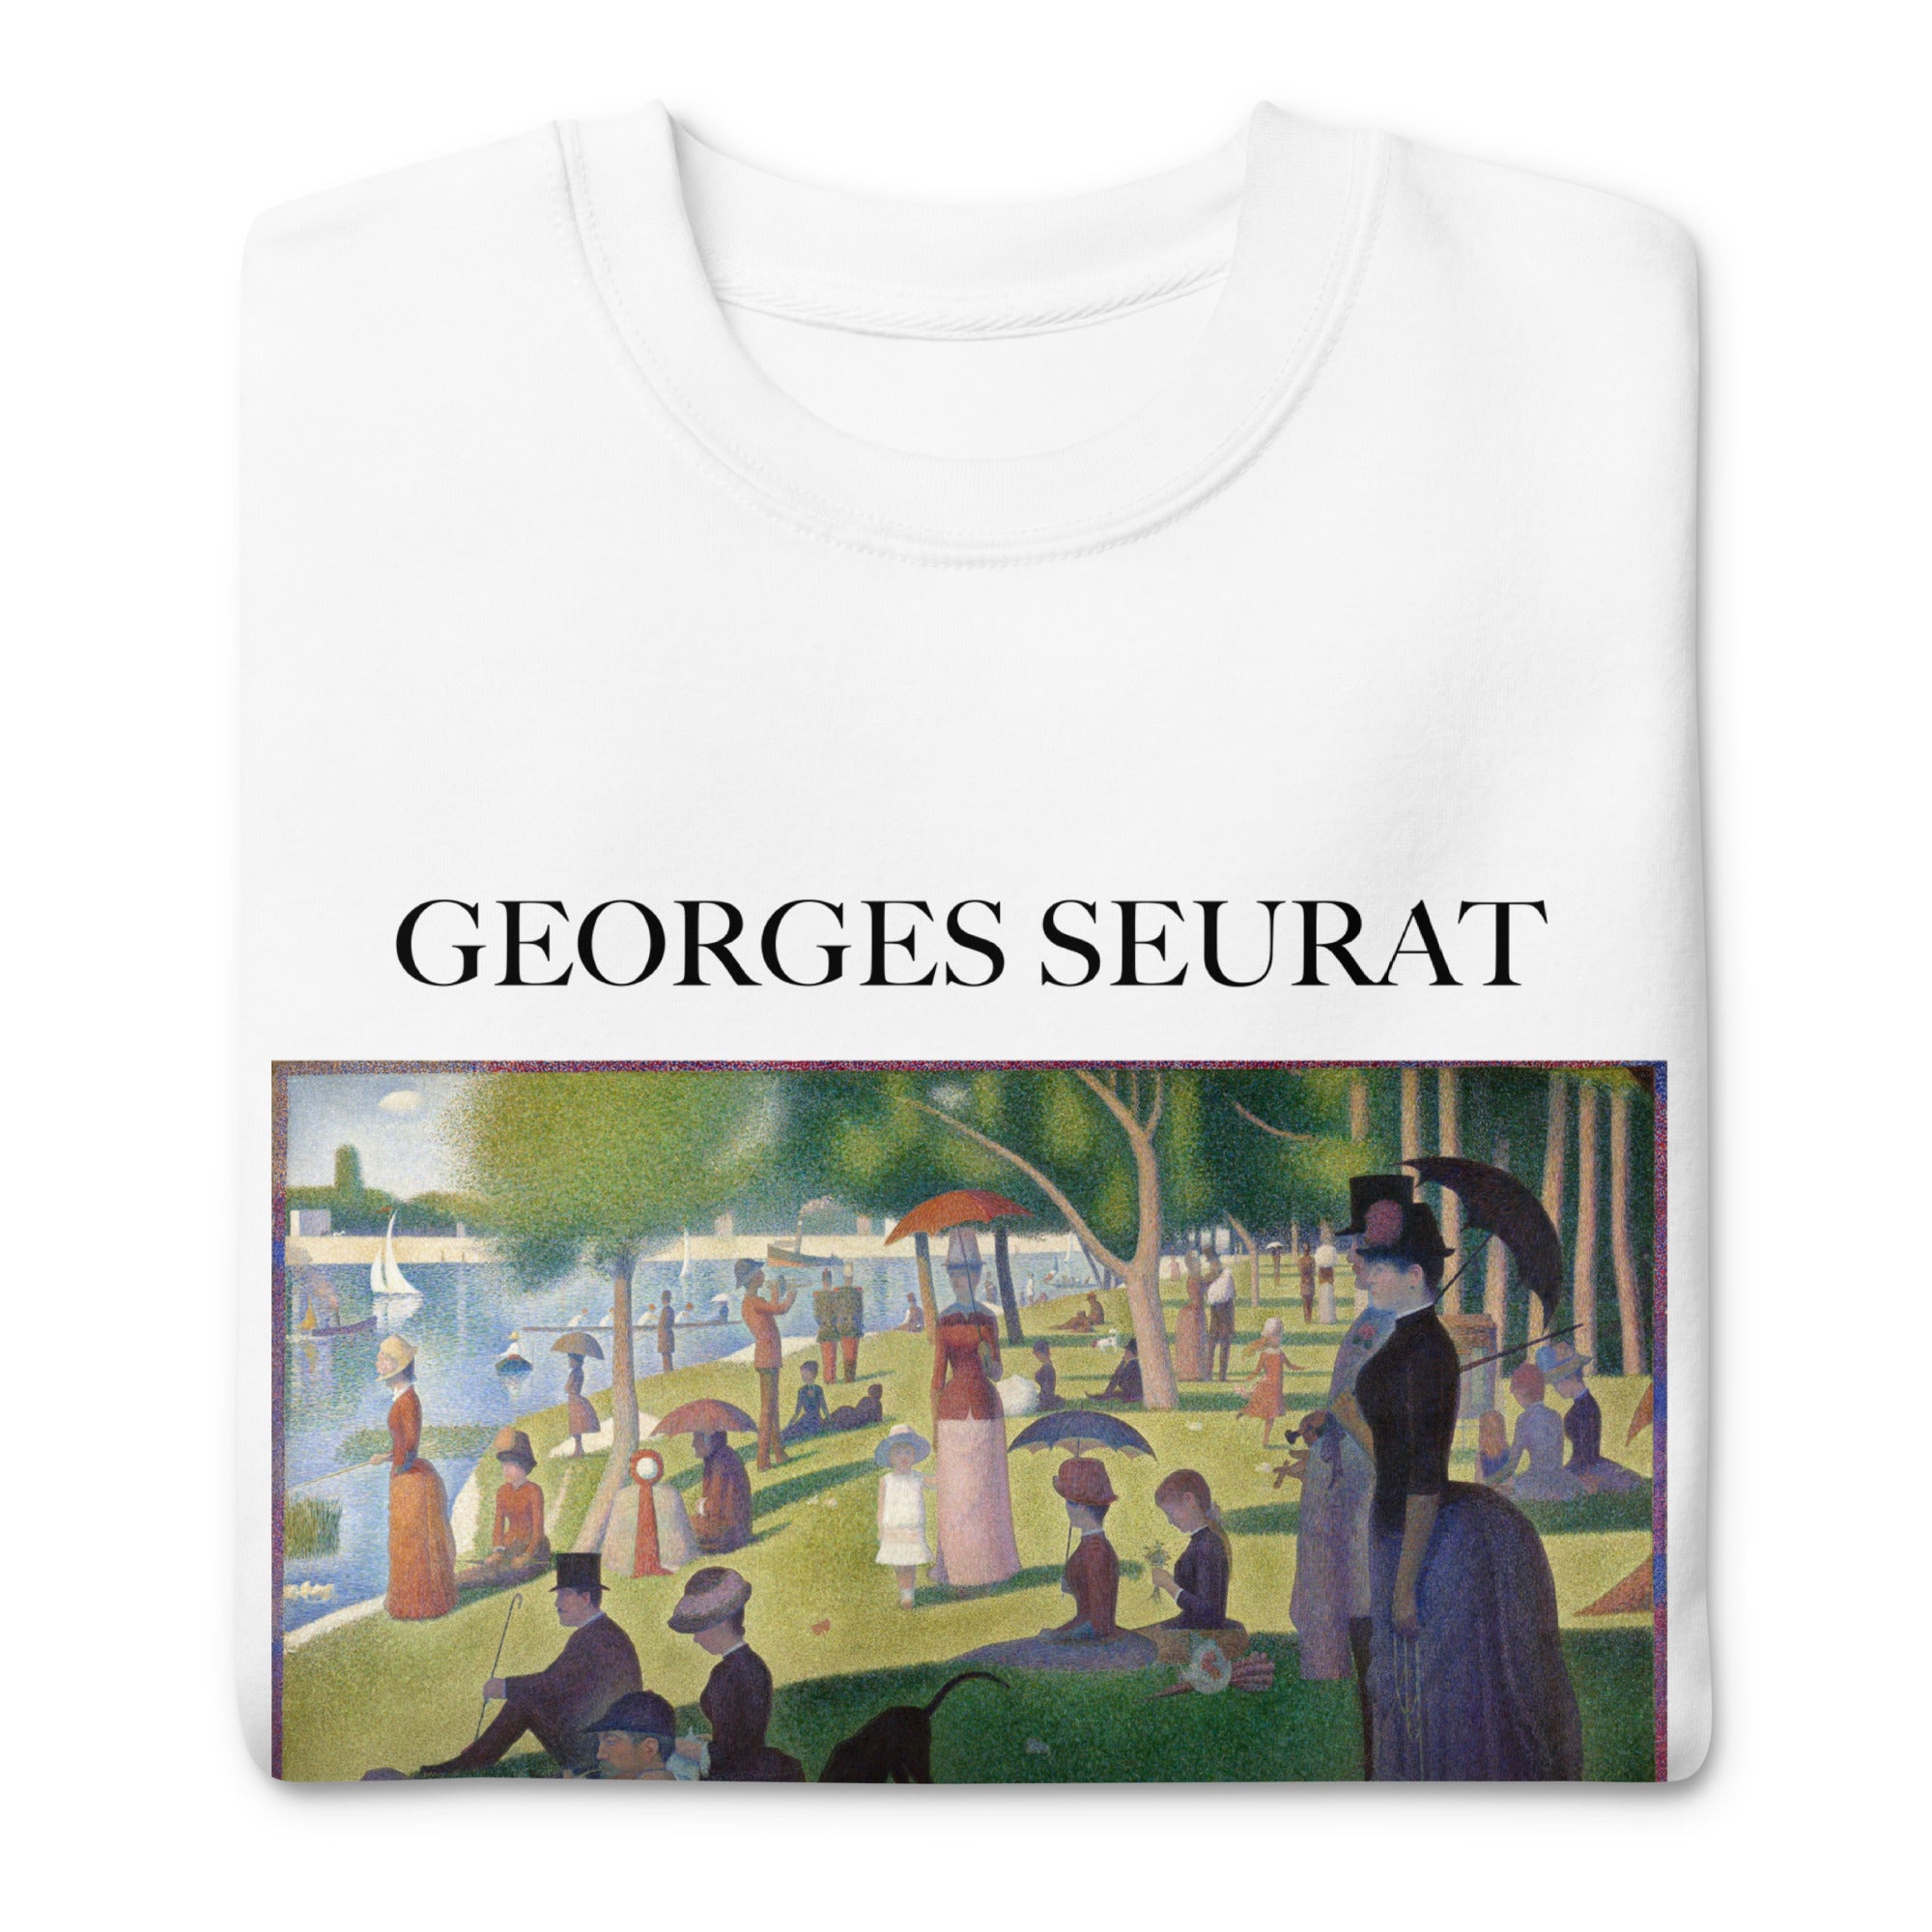 Georges Seurat 'Ein Sonntagnachmittag auf der Insel La Grande Jatte' Berühmtes Gemälde Sweatshirt | Unisex Premium Sweatshirt